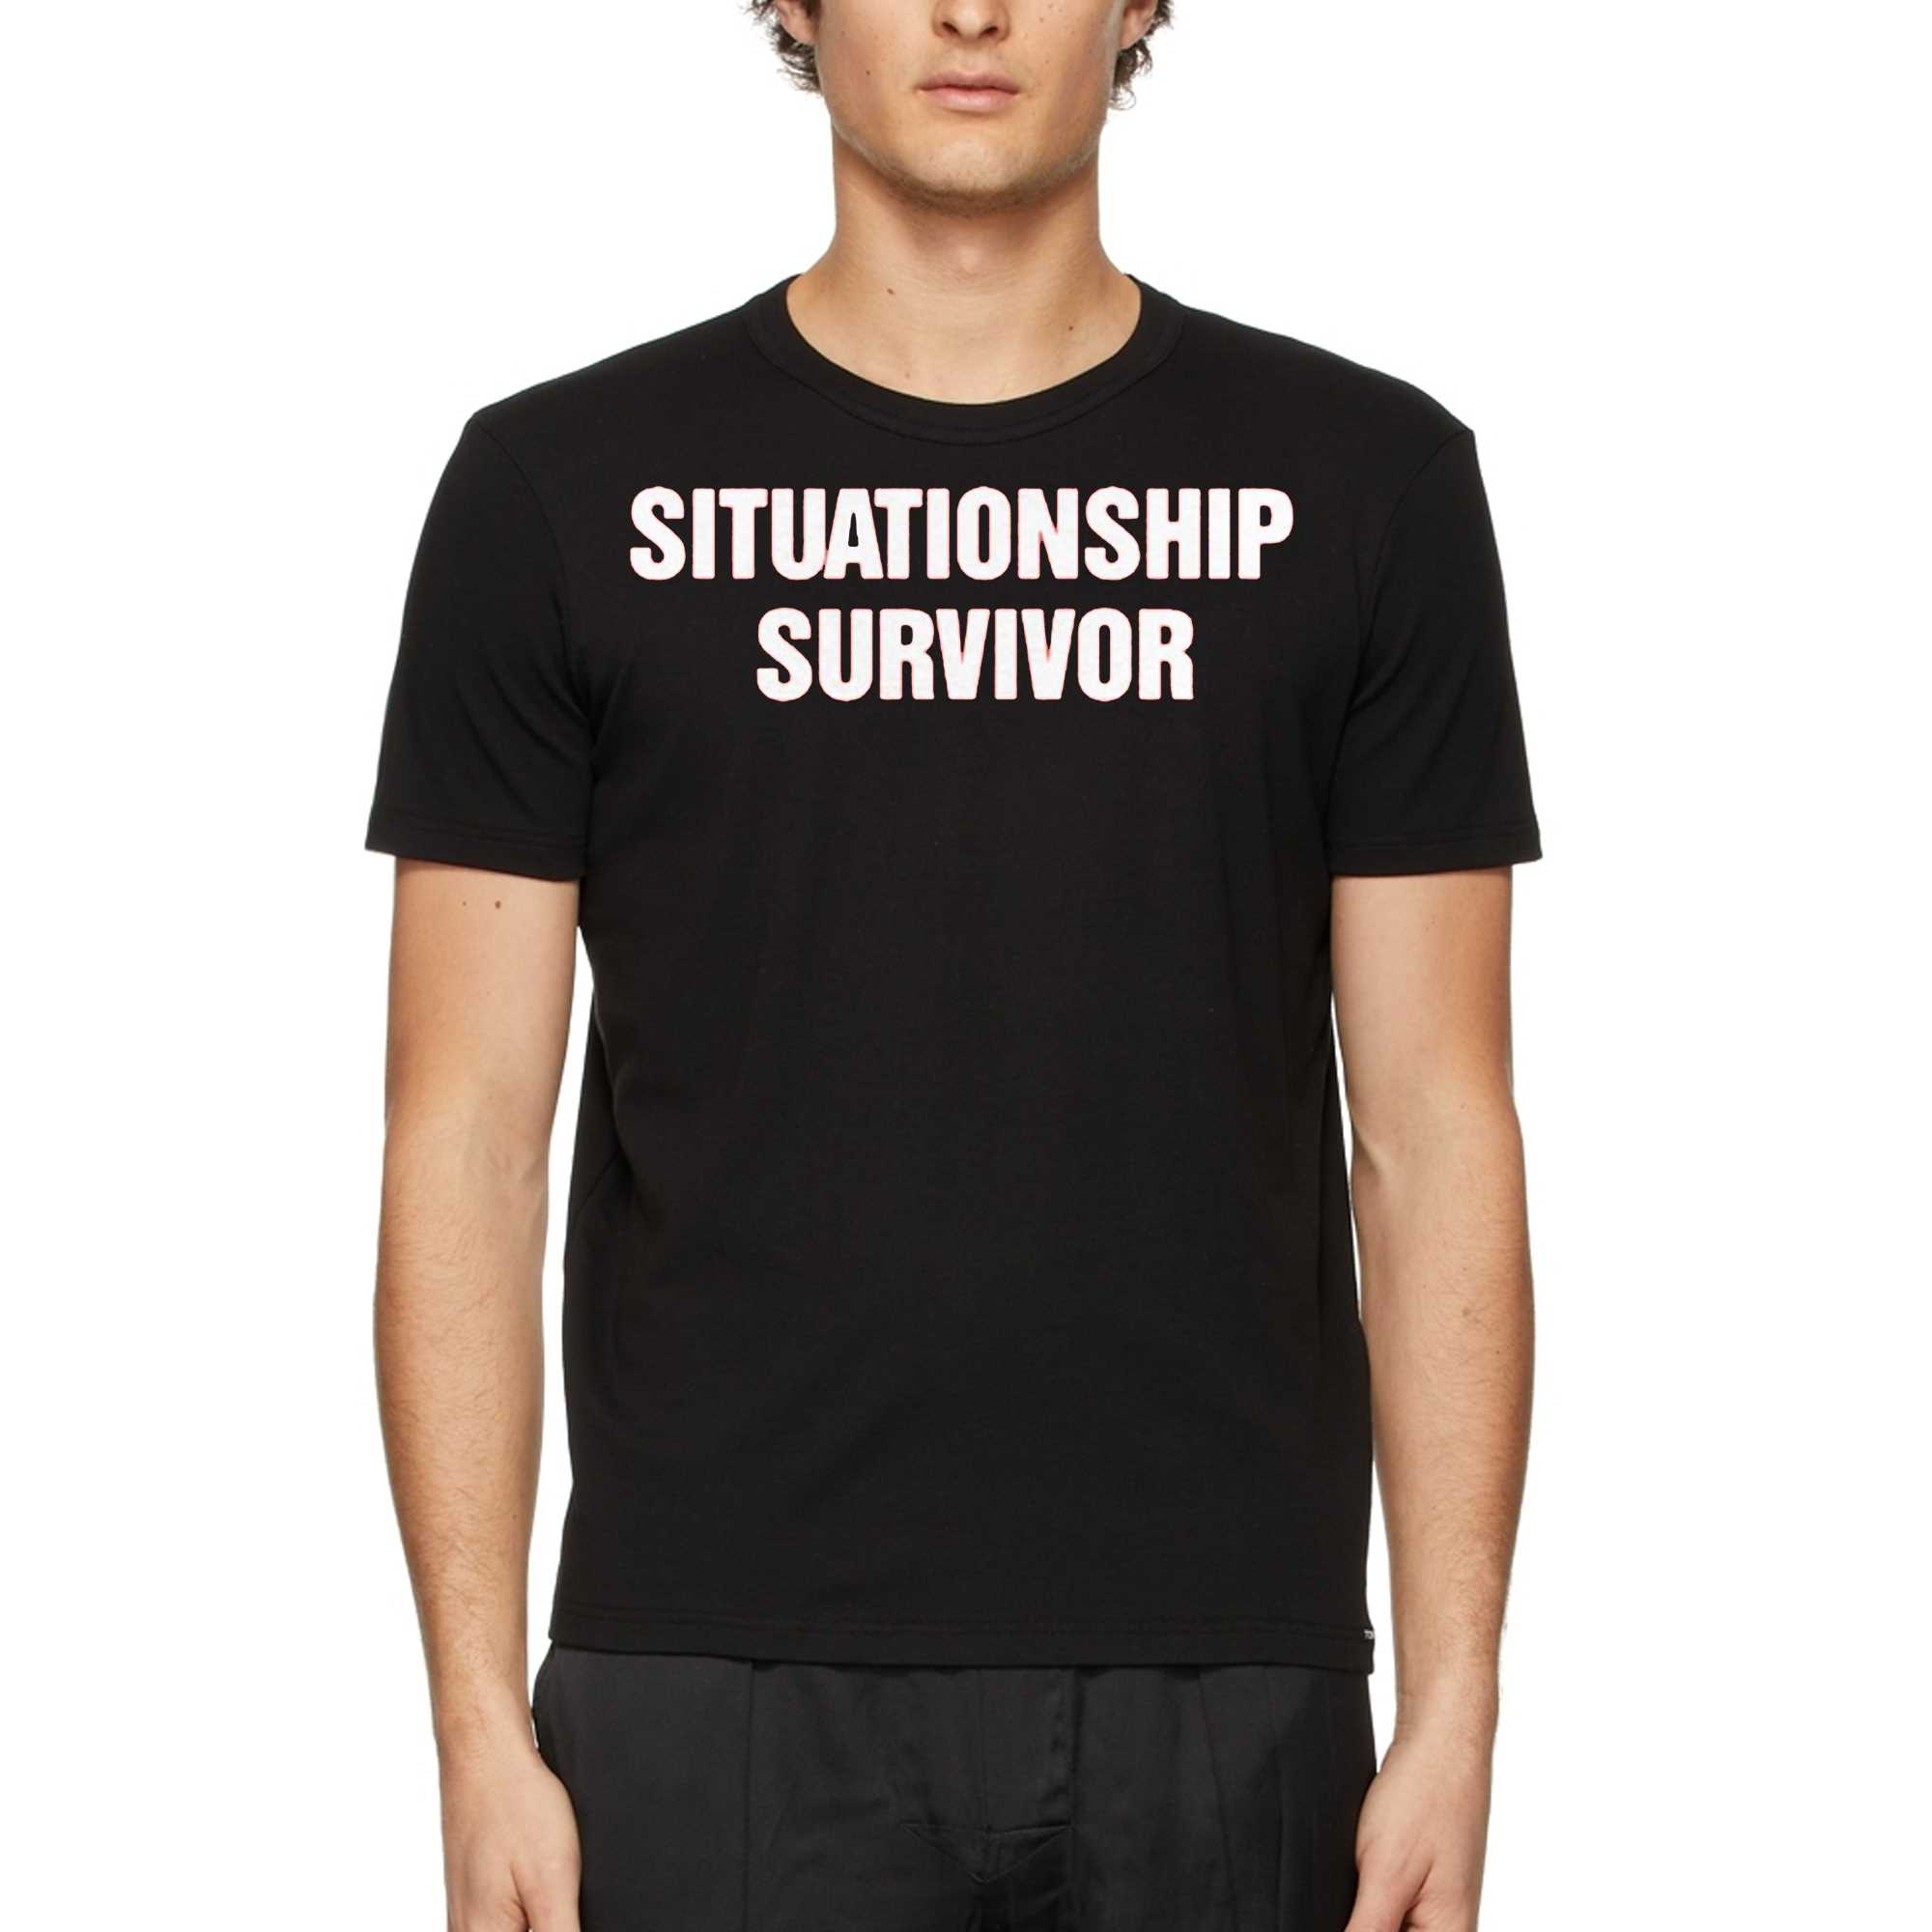 Situationship Survivor T-shirt 